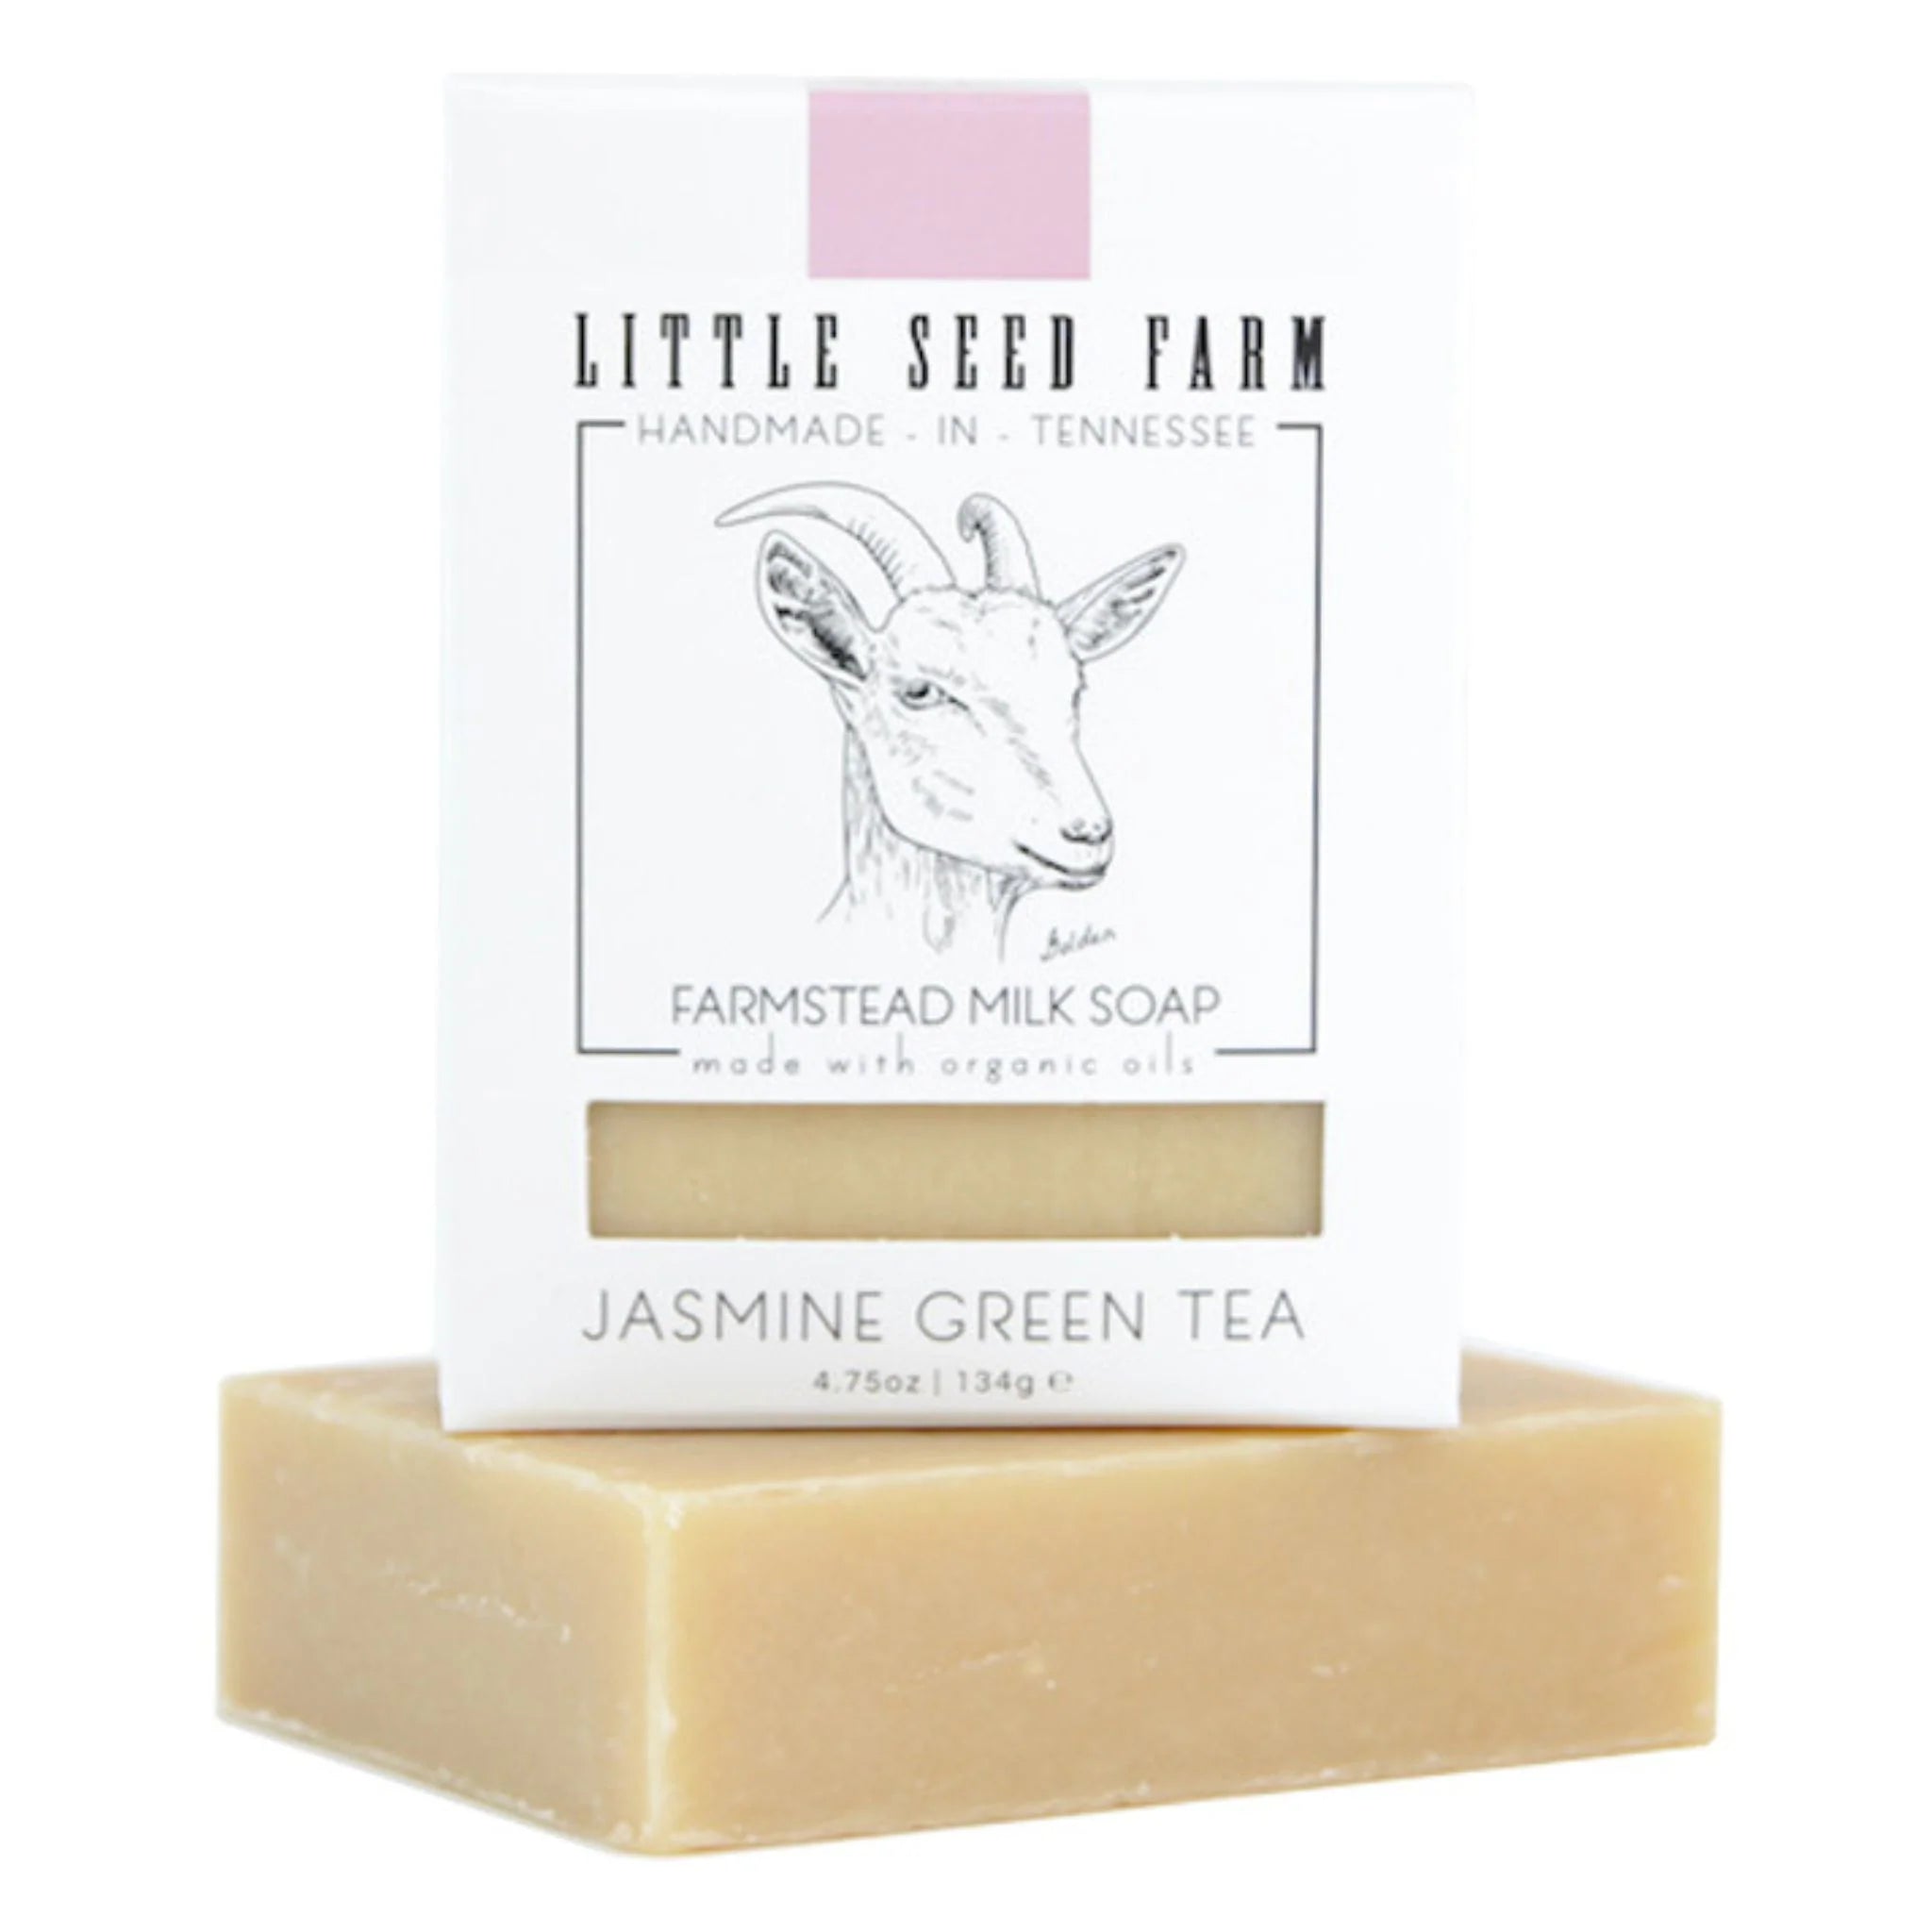 Jasmine Green Tea Hand + Body Soap Bar